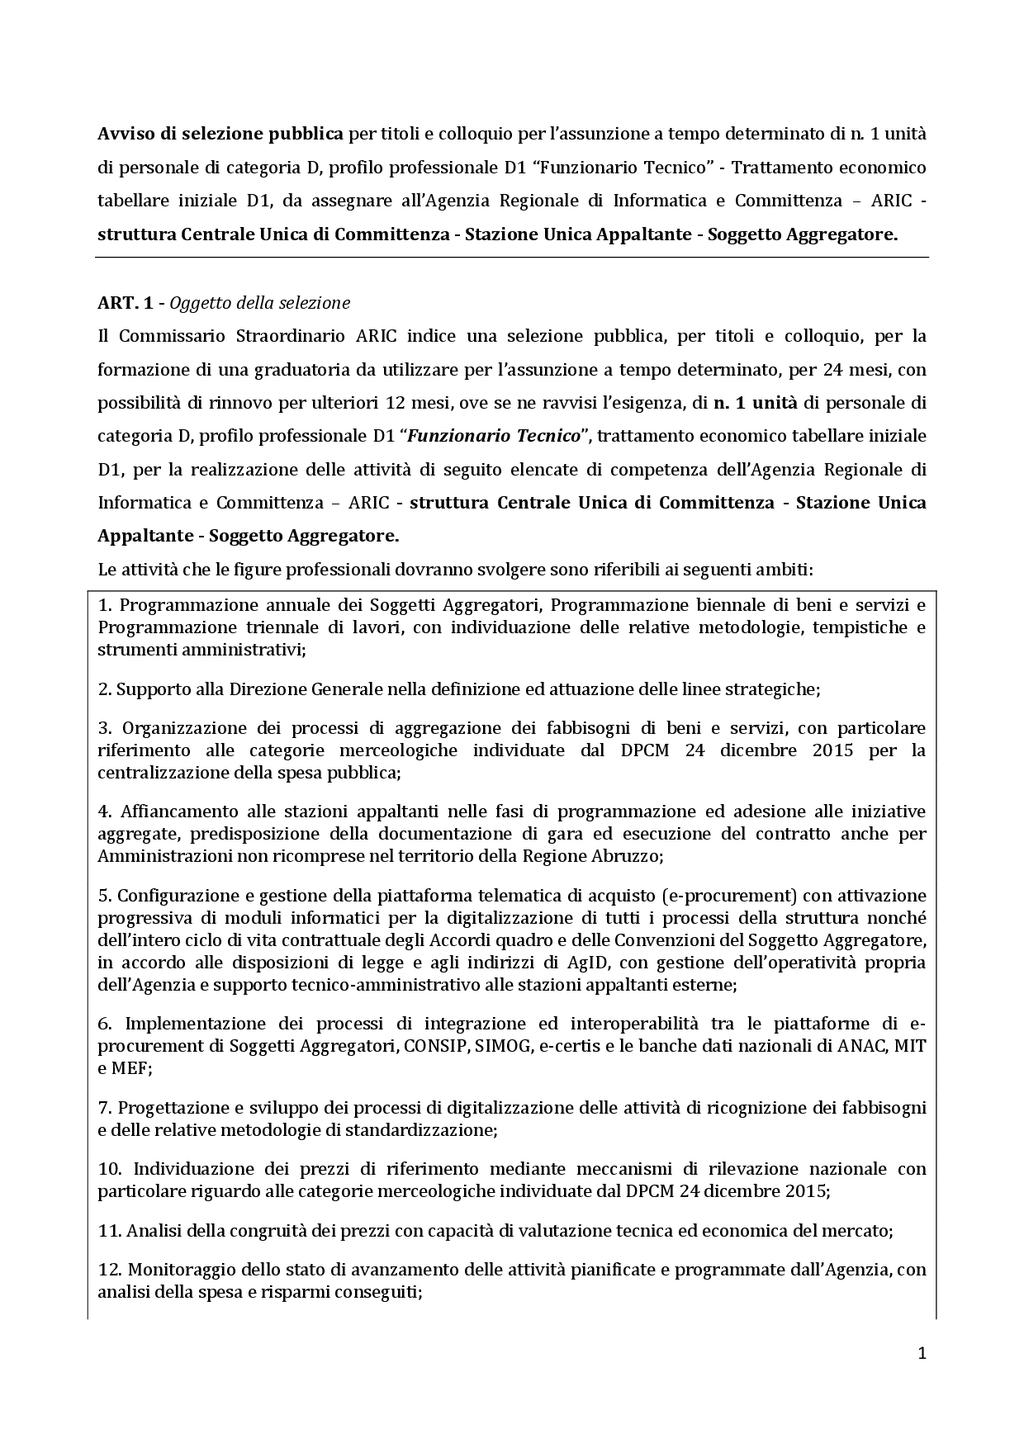 Pag. 52 Bollettino Ufficiale della Regione Abruzzo Anno XLIX - N.11 Speciale (25.01.